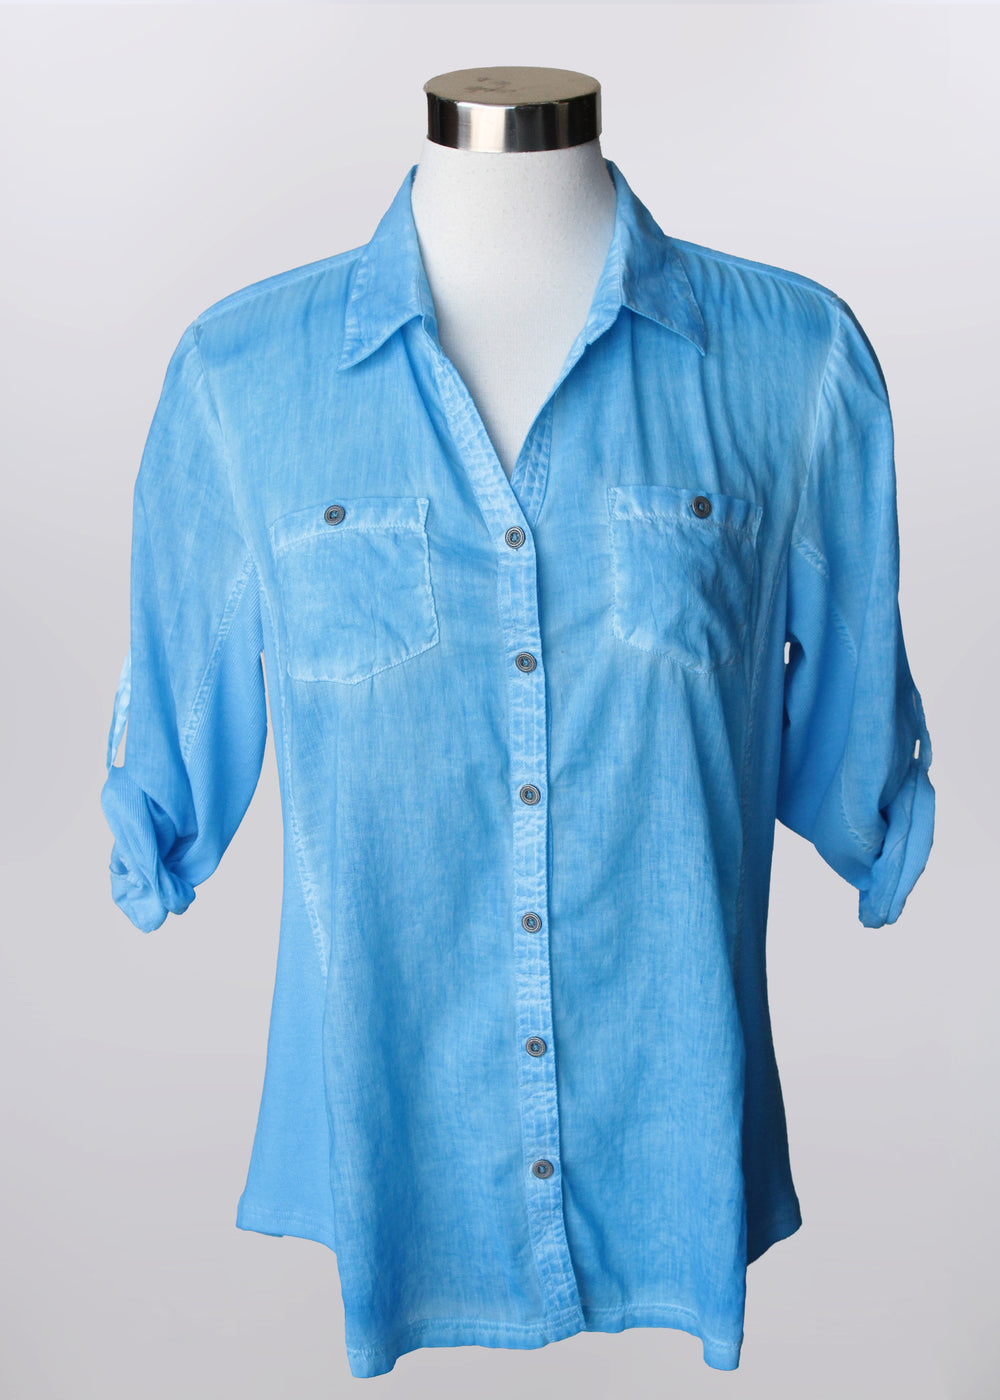 Keren Hart shirt 76020, button front mineral dye